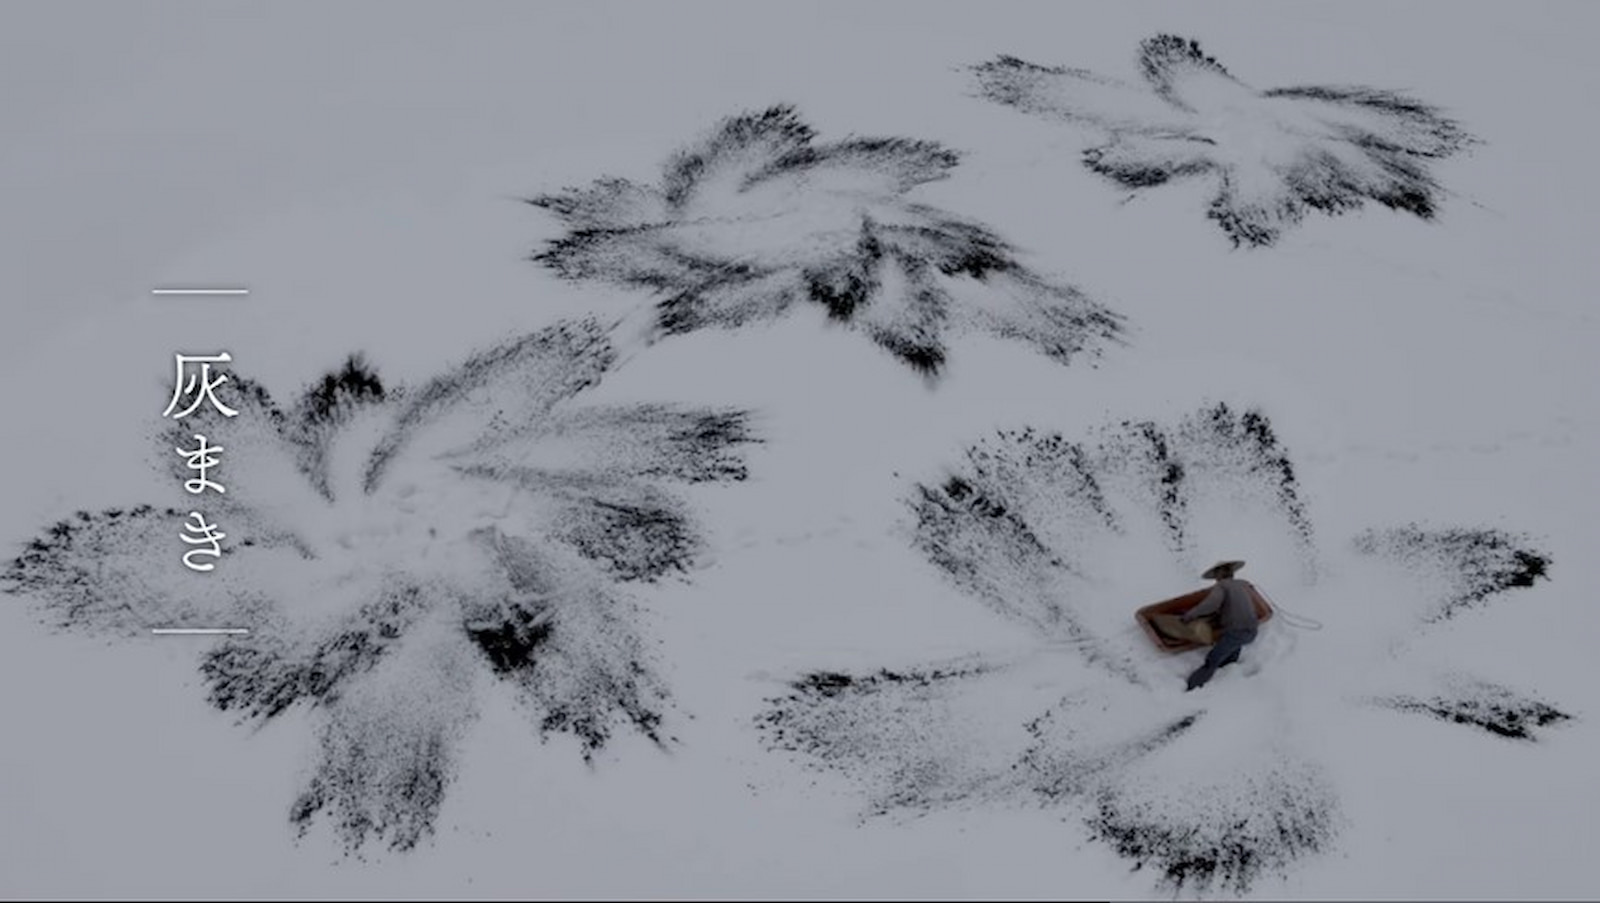 於冬末時在梯田上灑上碳化稻殼的技術也稱為「灰卷」，如同在雪地裡綻放的煙花圖。圖／紀錄片《新．映像詩 里山》